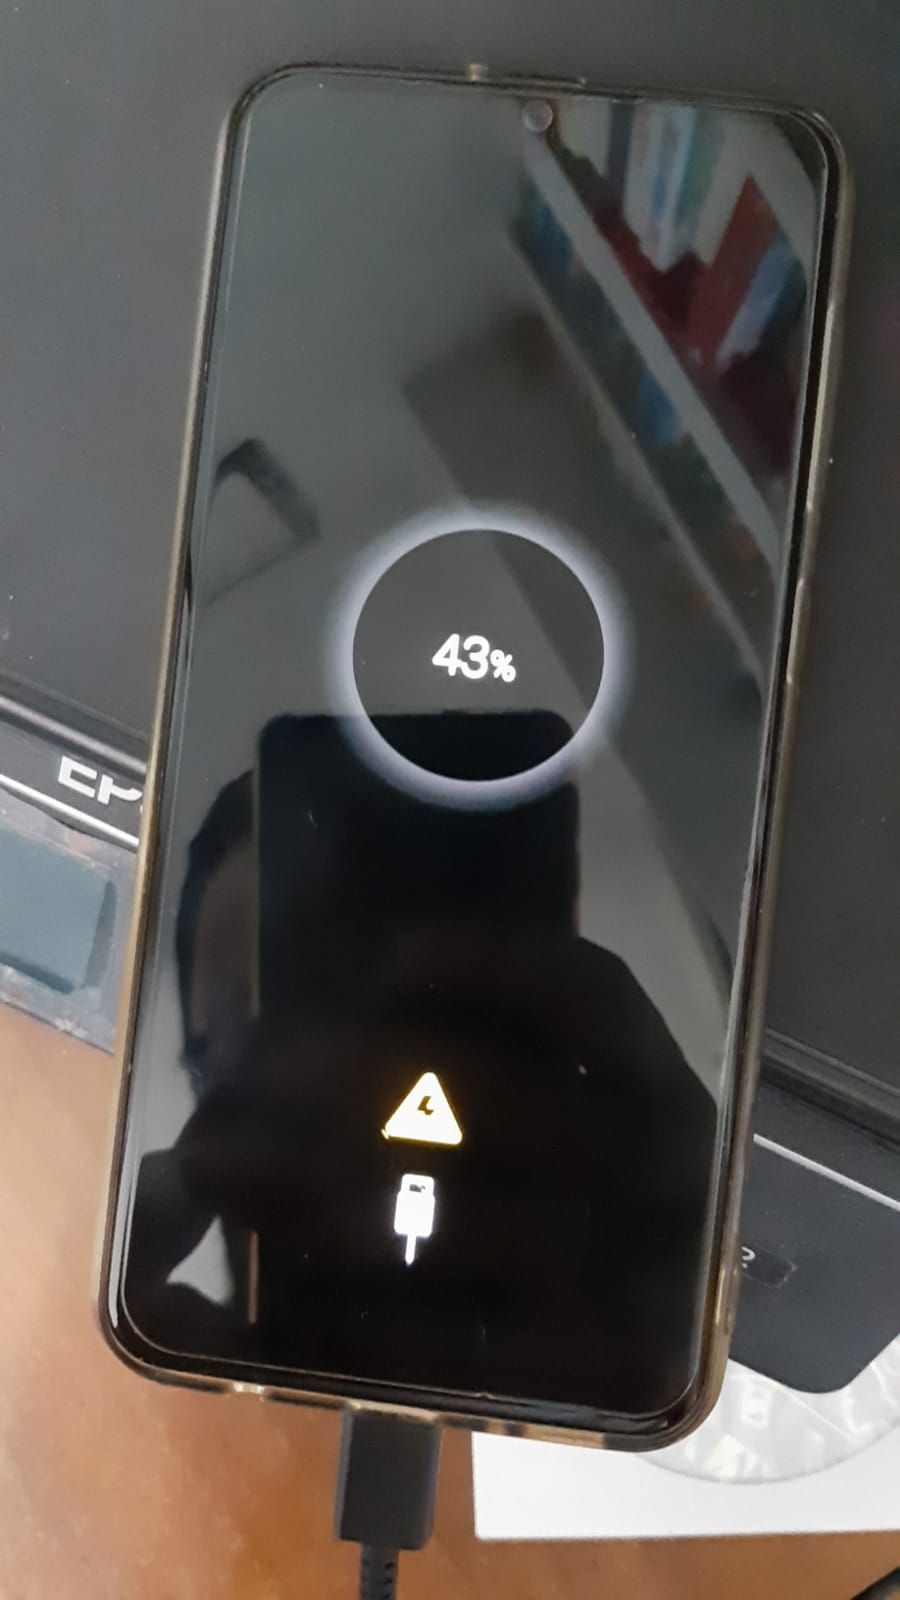 Problema caricamento batteria samsung A50 - Samsung Community